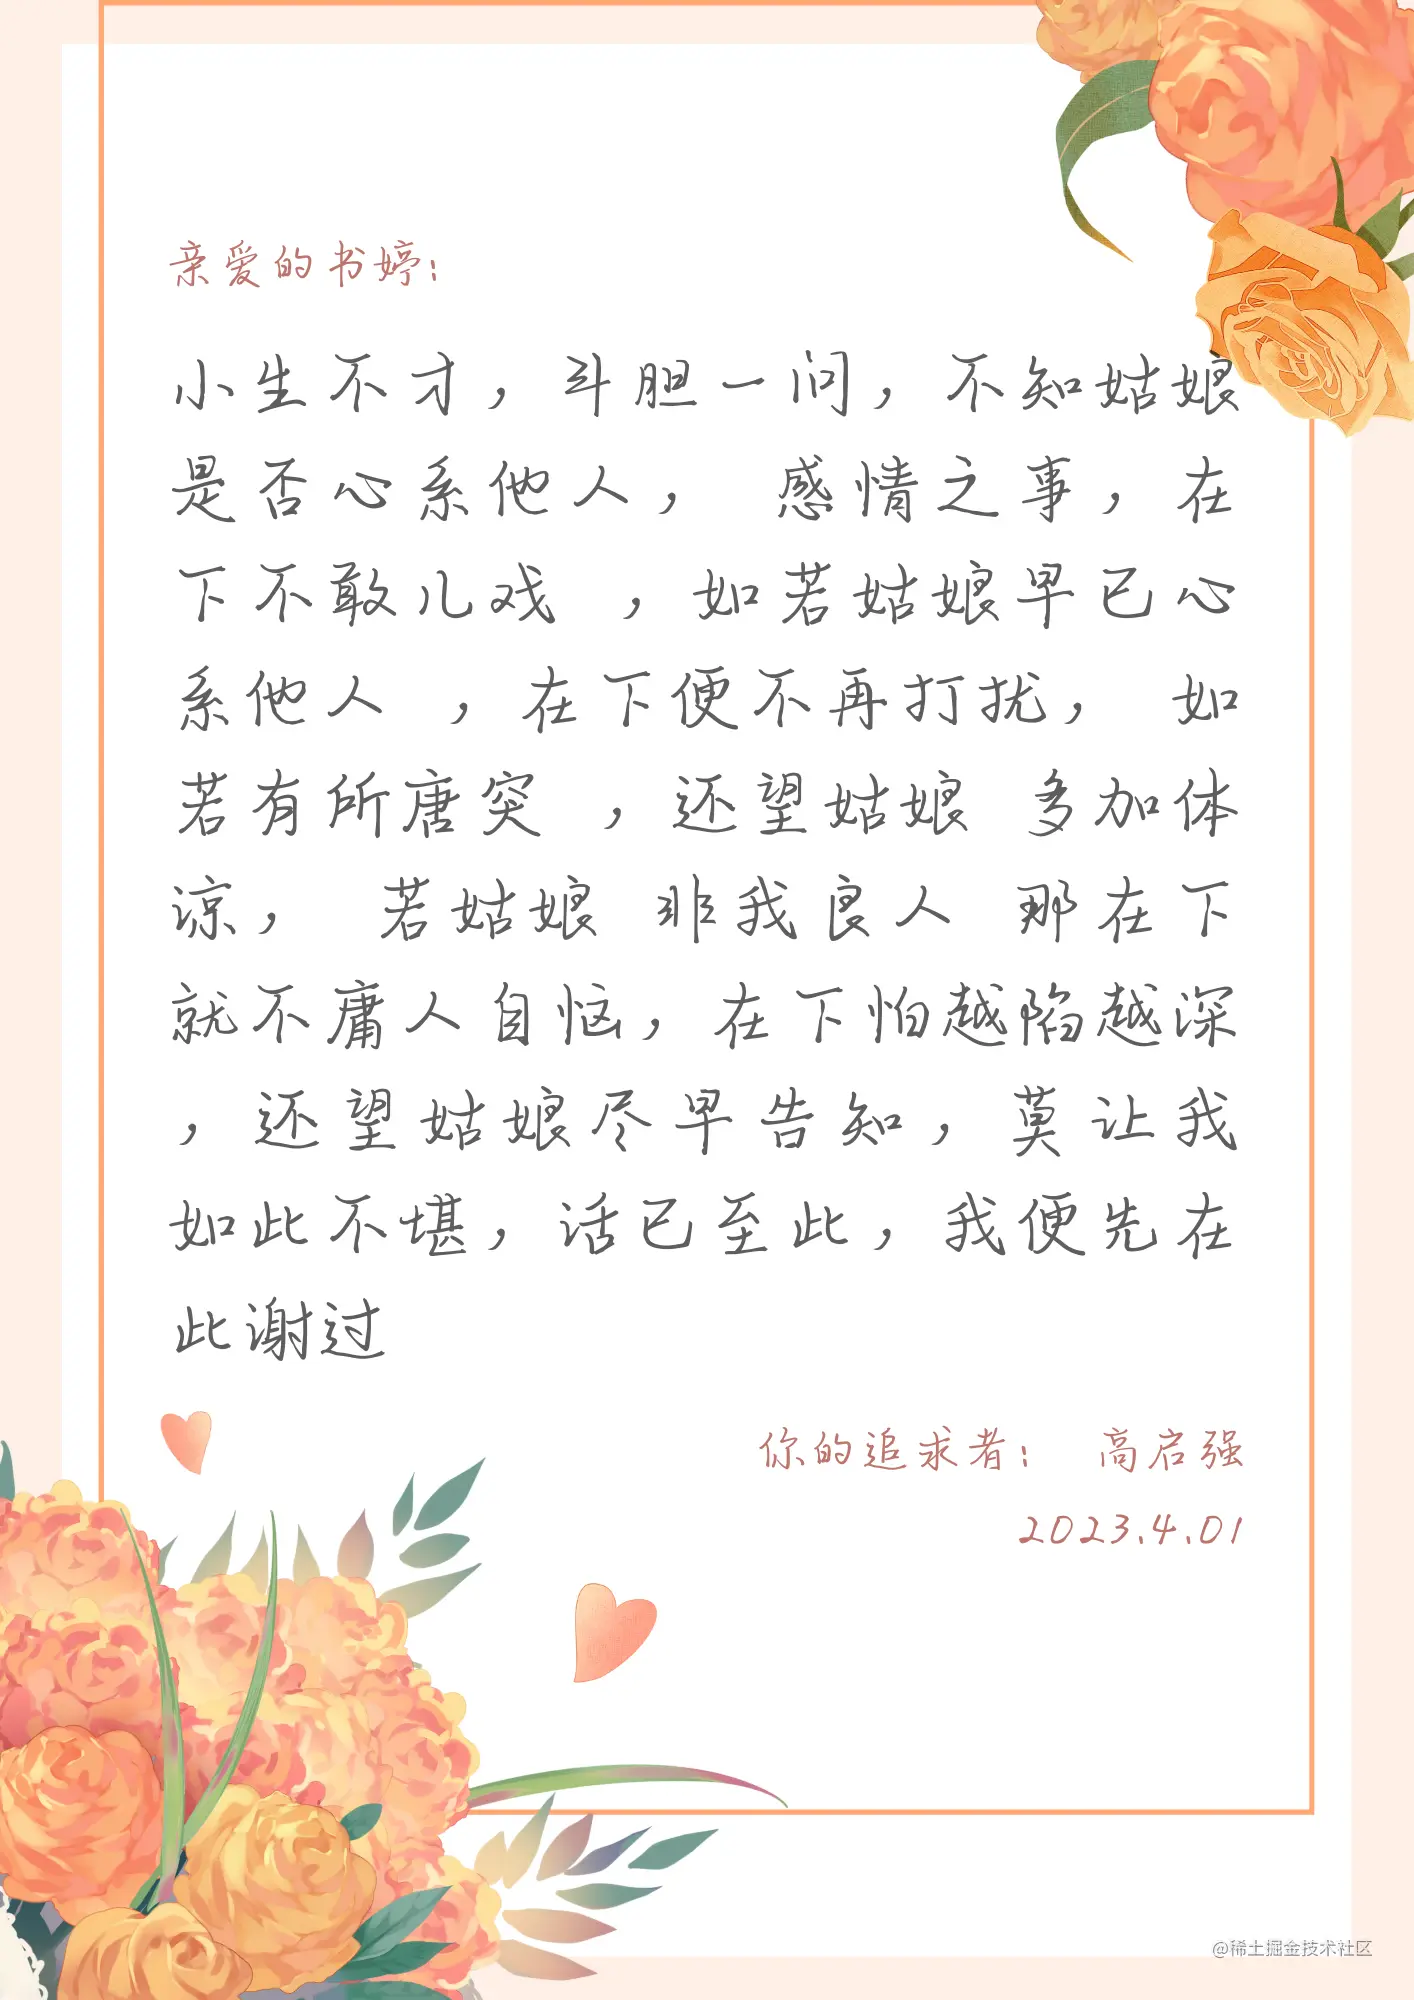 黄橙色手绘玫瑰花束母亲节信纸手绘母亲节个人感谢中文信纸.png